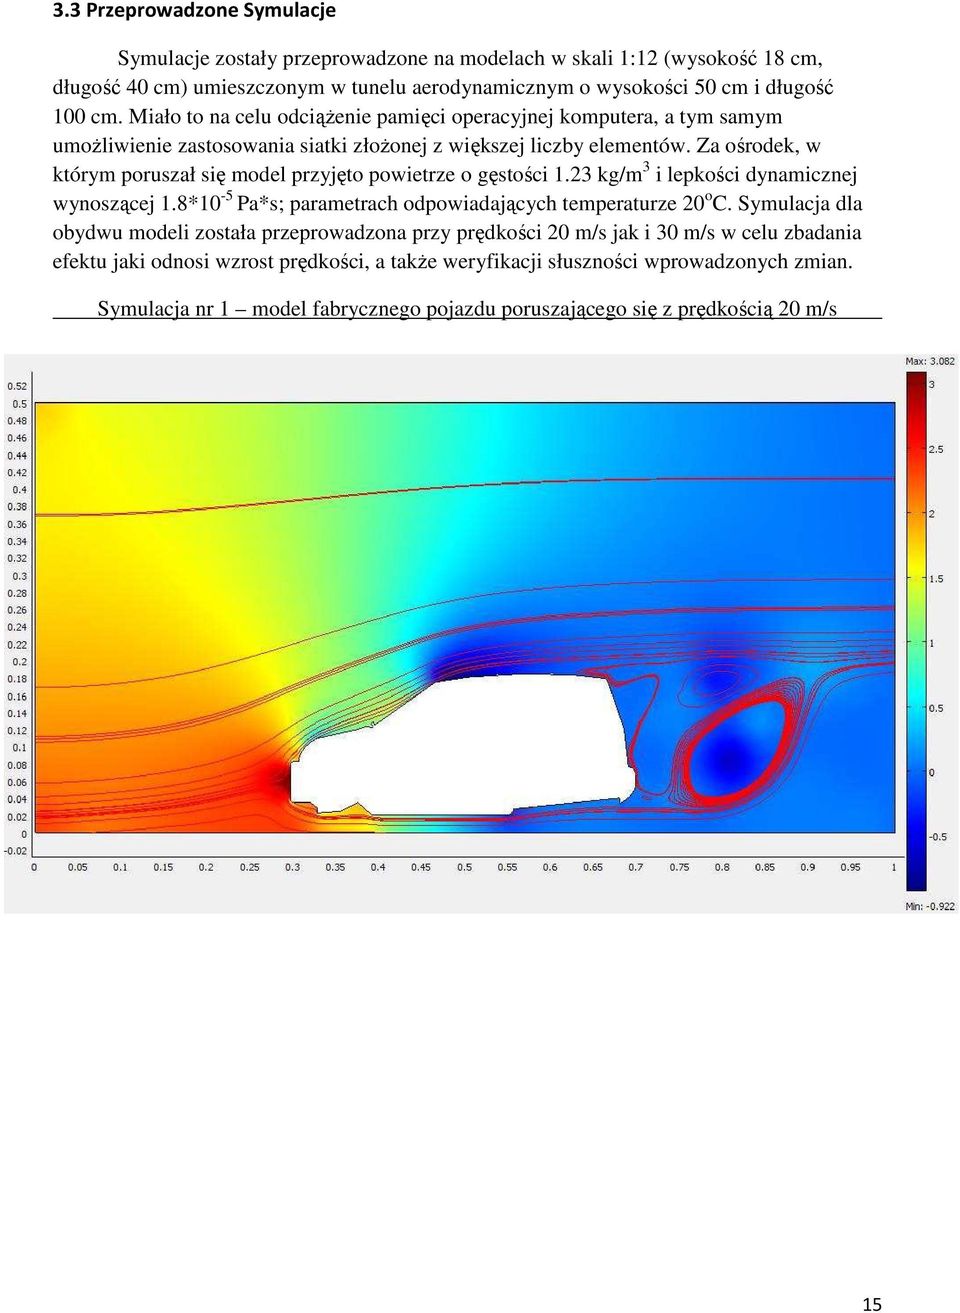 Za ośrodek, w którym poruszał się model przyjęto powietrze o gęstości 1.23 kg/m 3 i lepkości dynamicznej wynoszącej 1.8*10-5 Pa*s; parametrach odpowiadających temperaturze 20 o C.